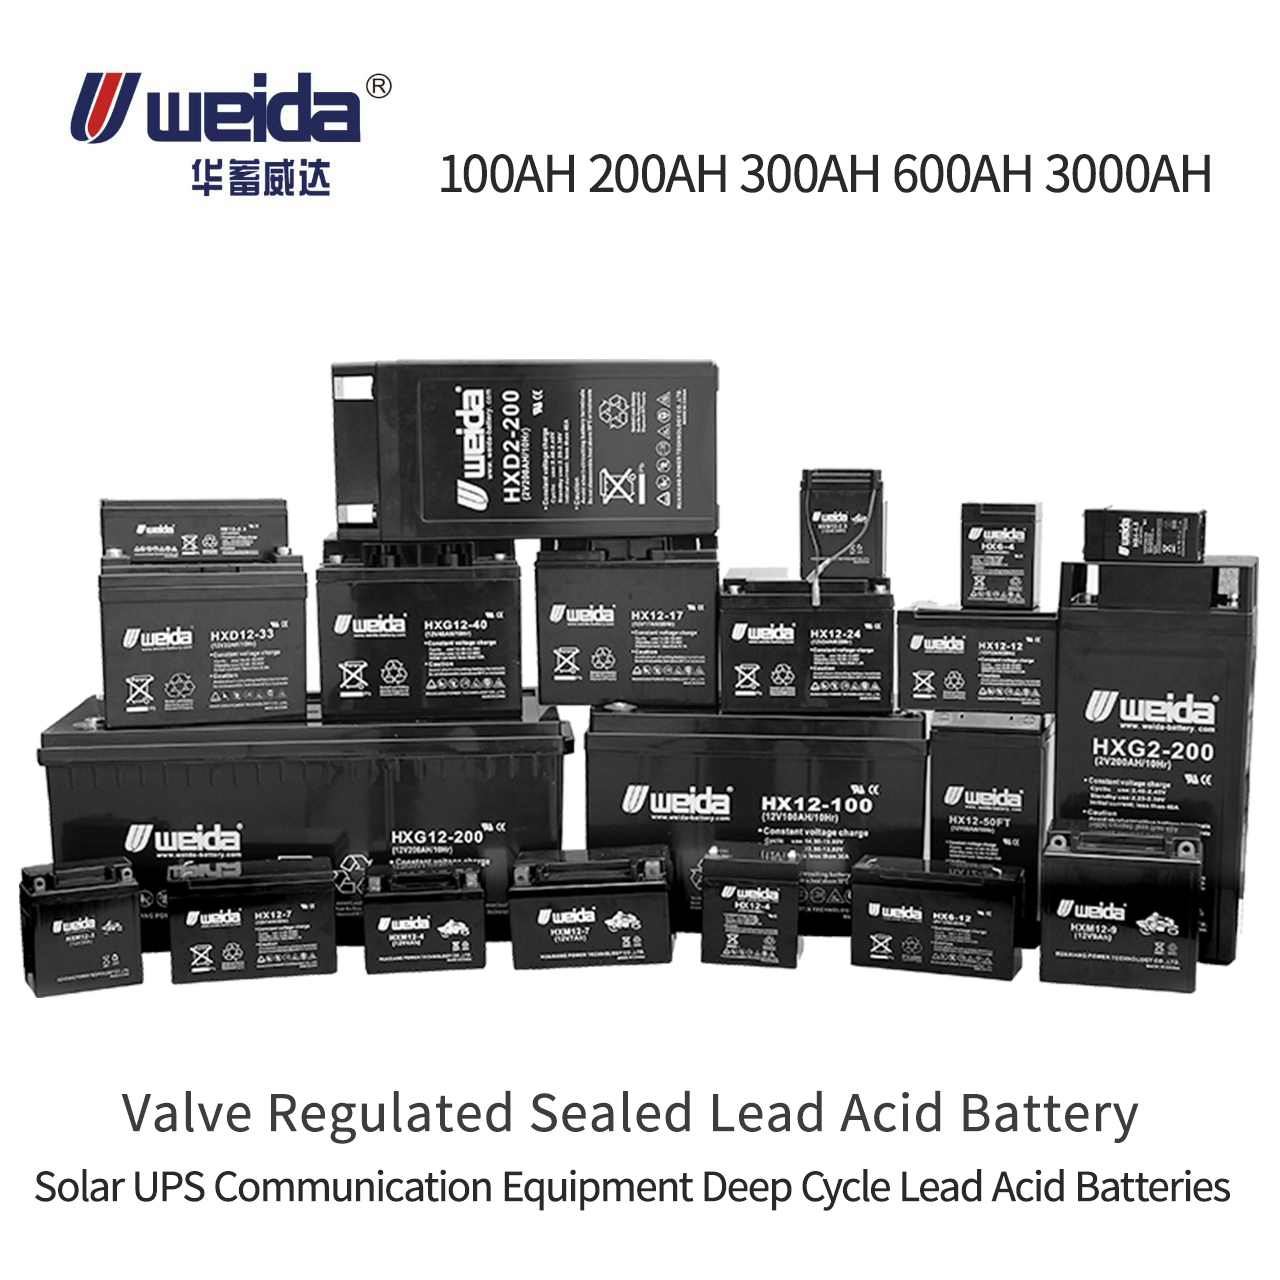 Weida® UPS sla pin agm van axit chì được điều chỉnh 100ah 200ah pin axit chì chu kỳ sâu pin axit chì năng lượng mặt trời